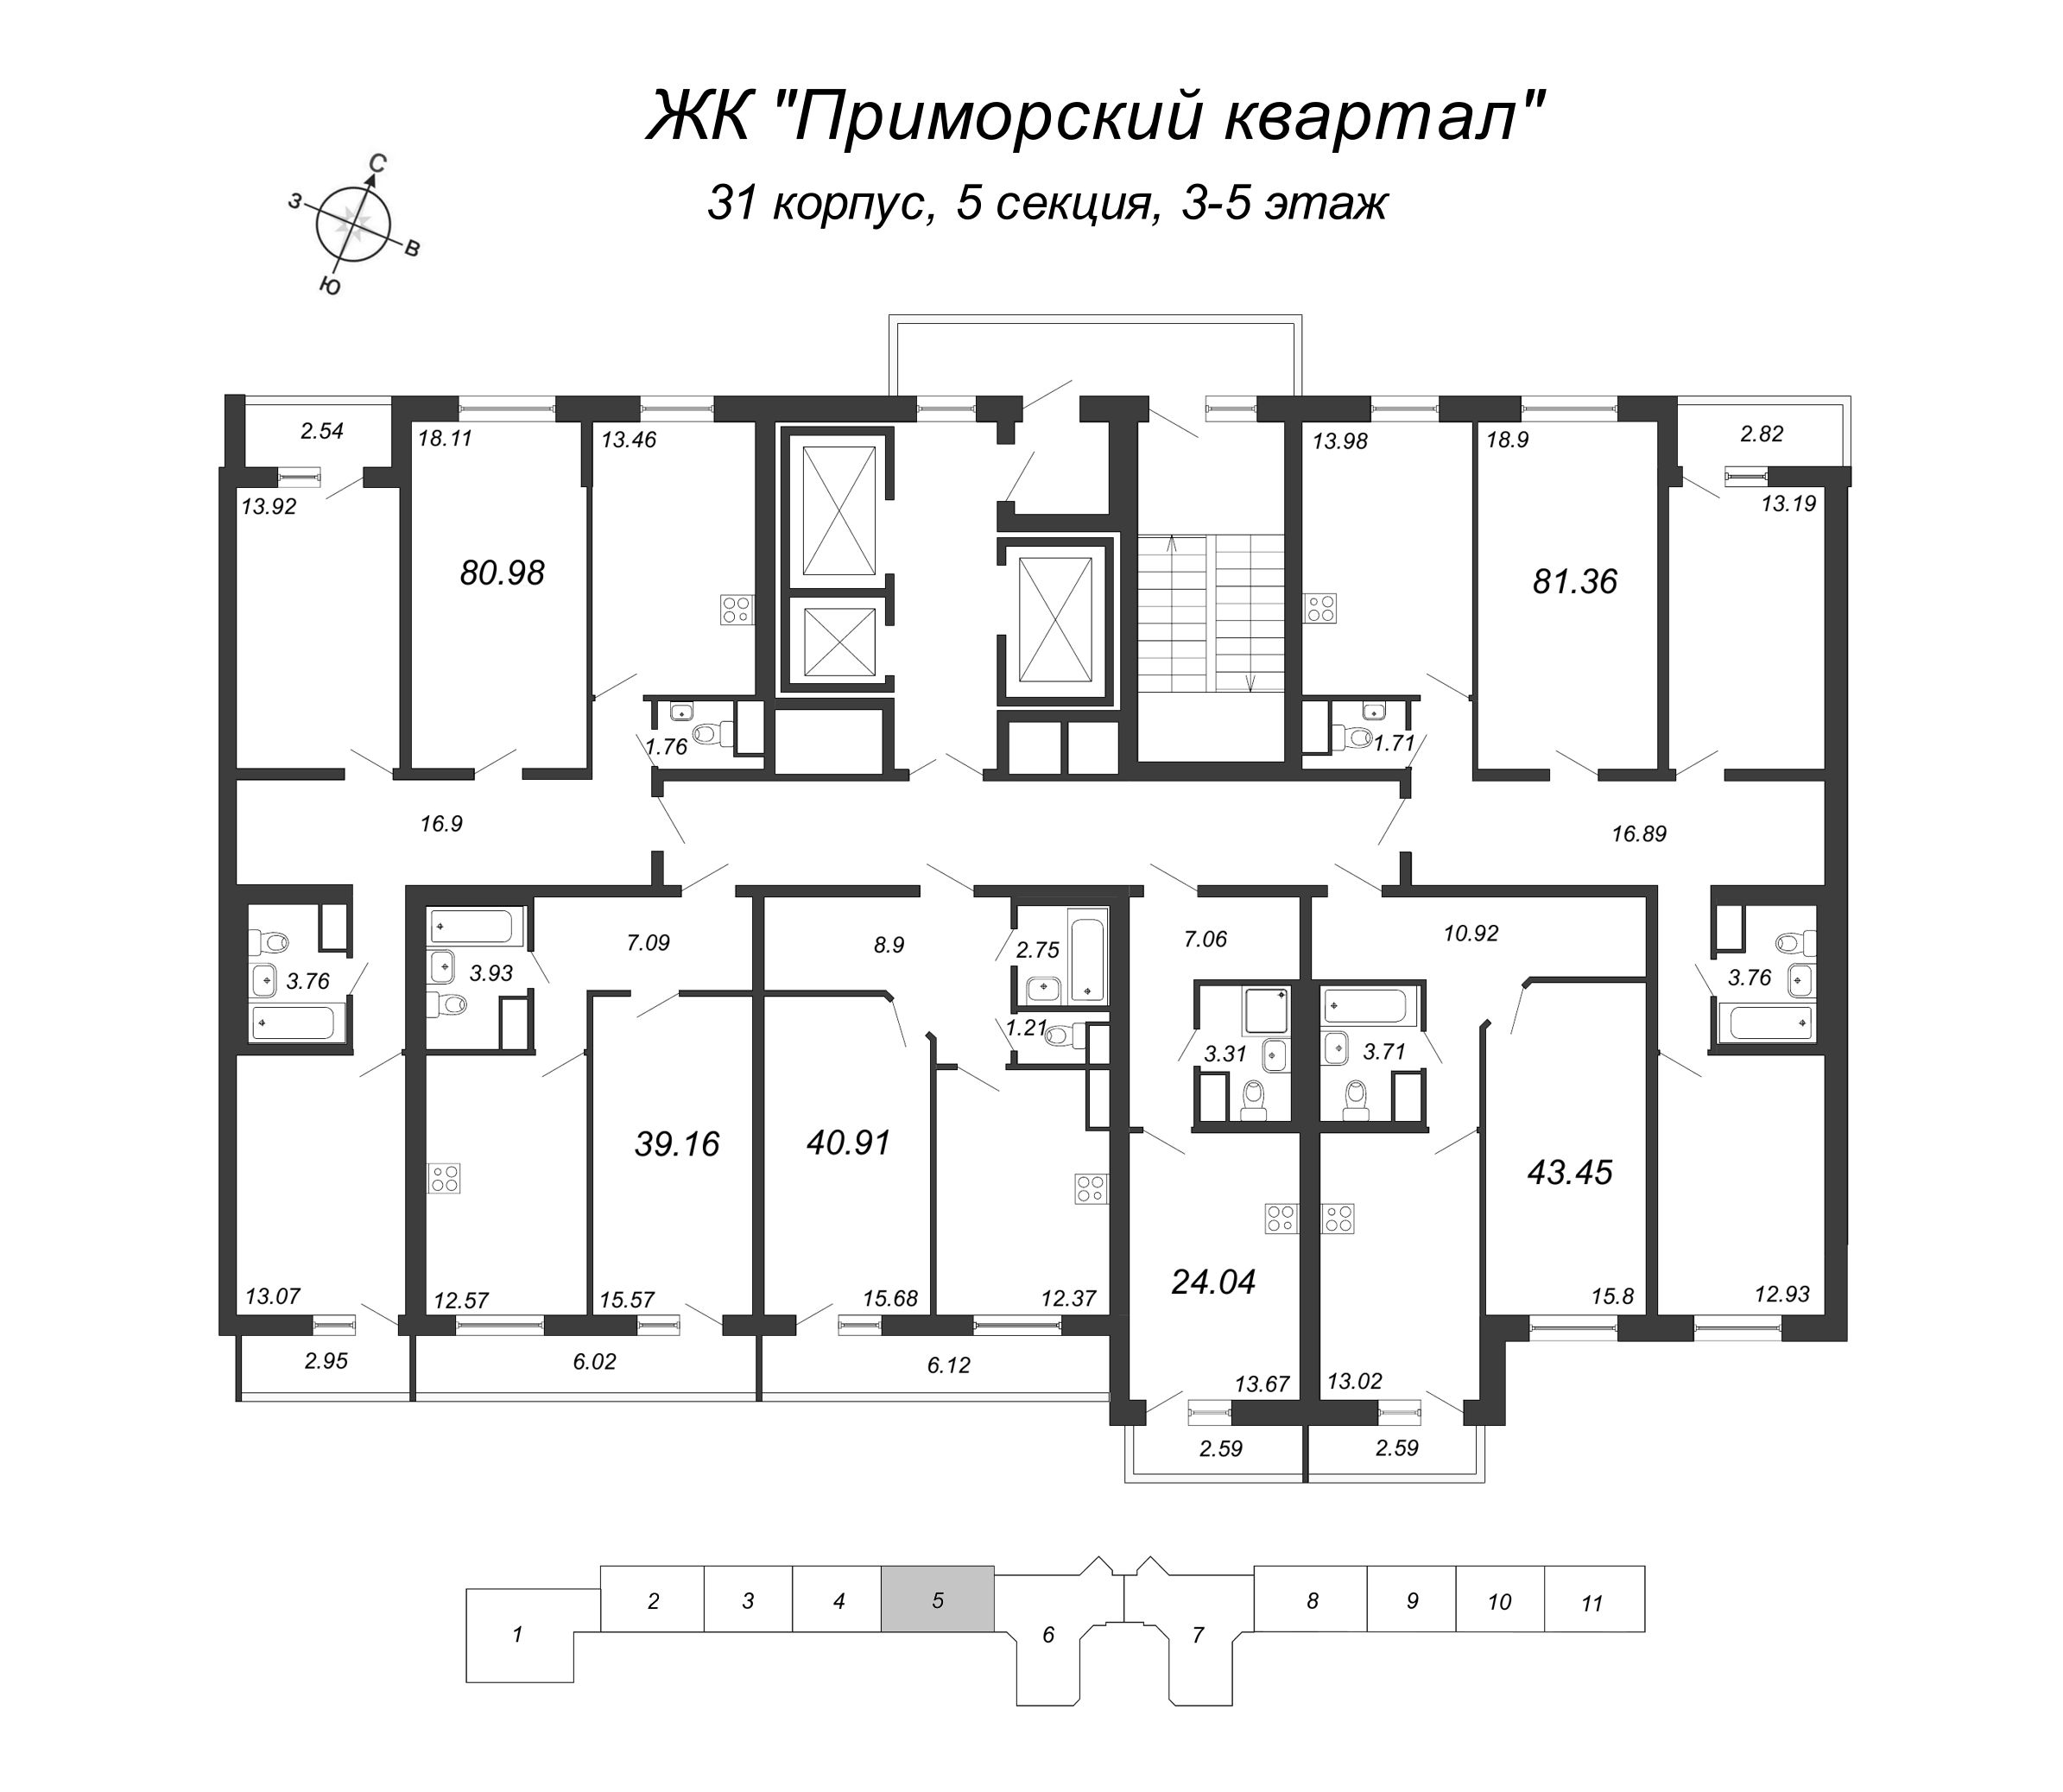 3-комнатная квартира, 81.36 м² в ЖК "Приморский квартал" - планировка этажа